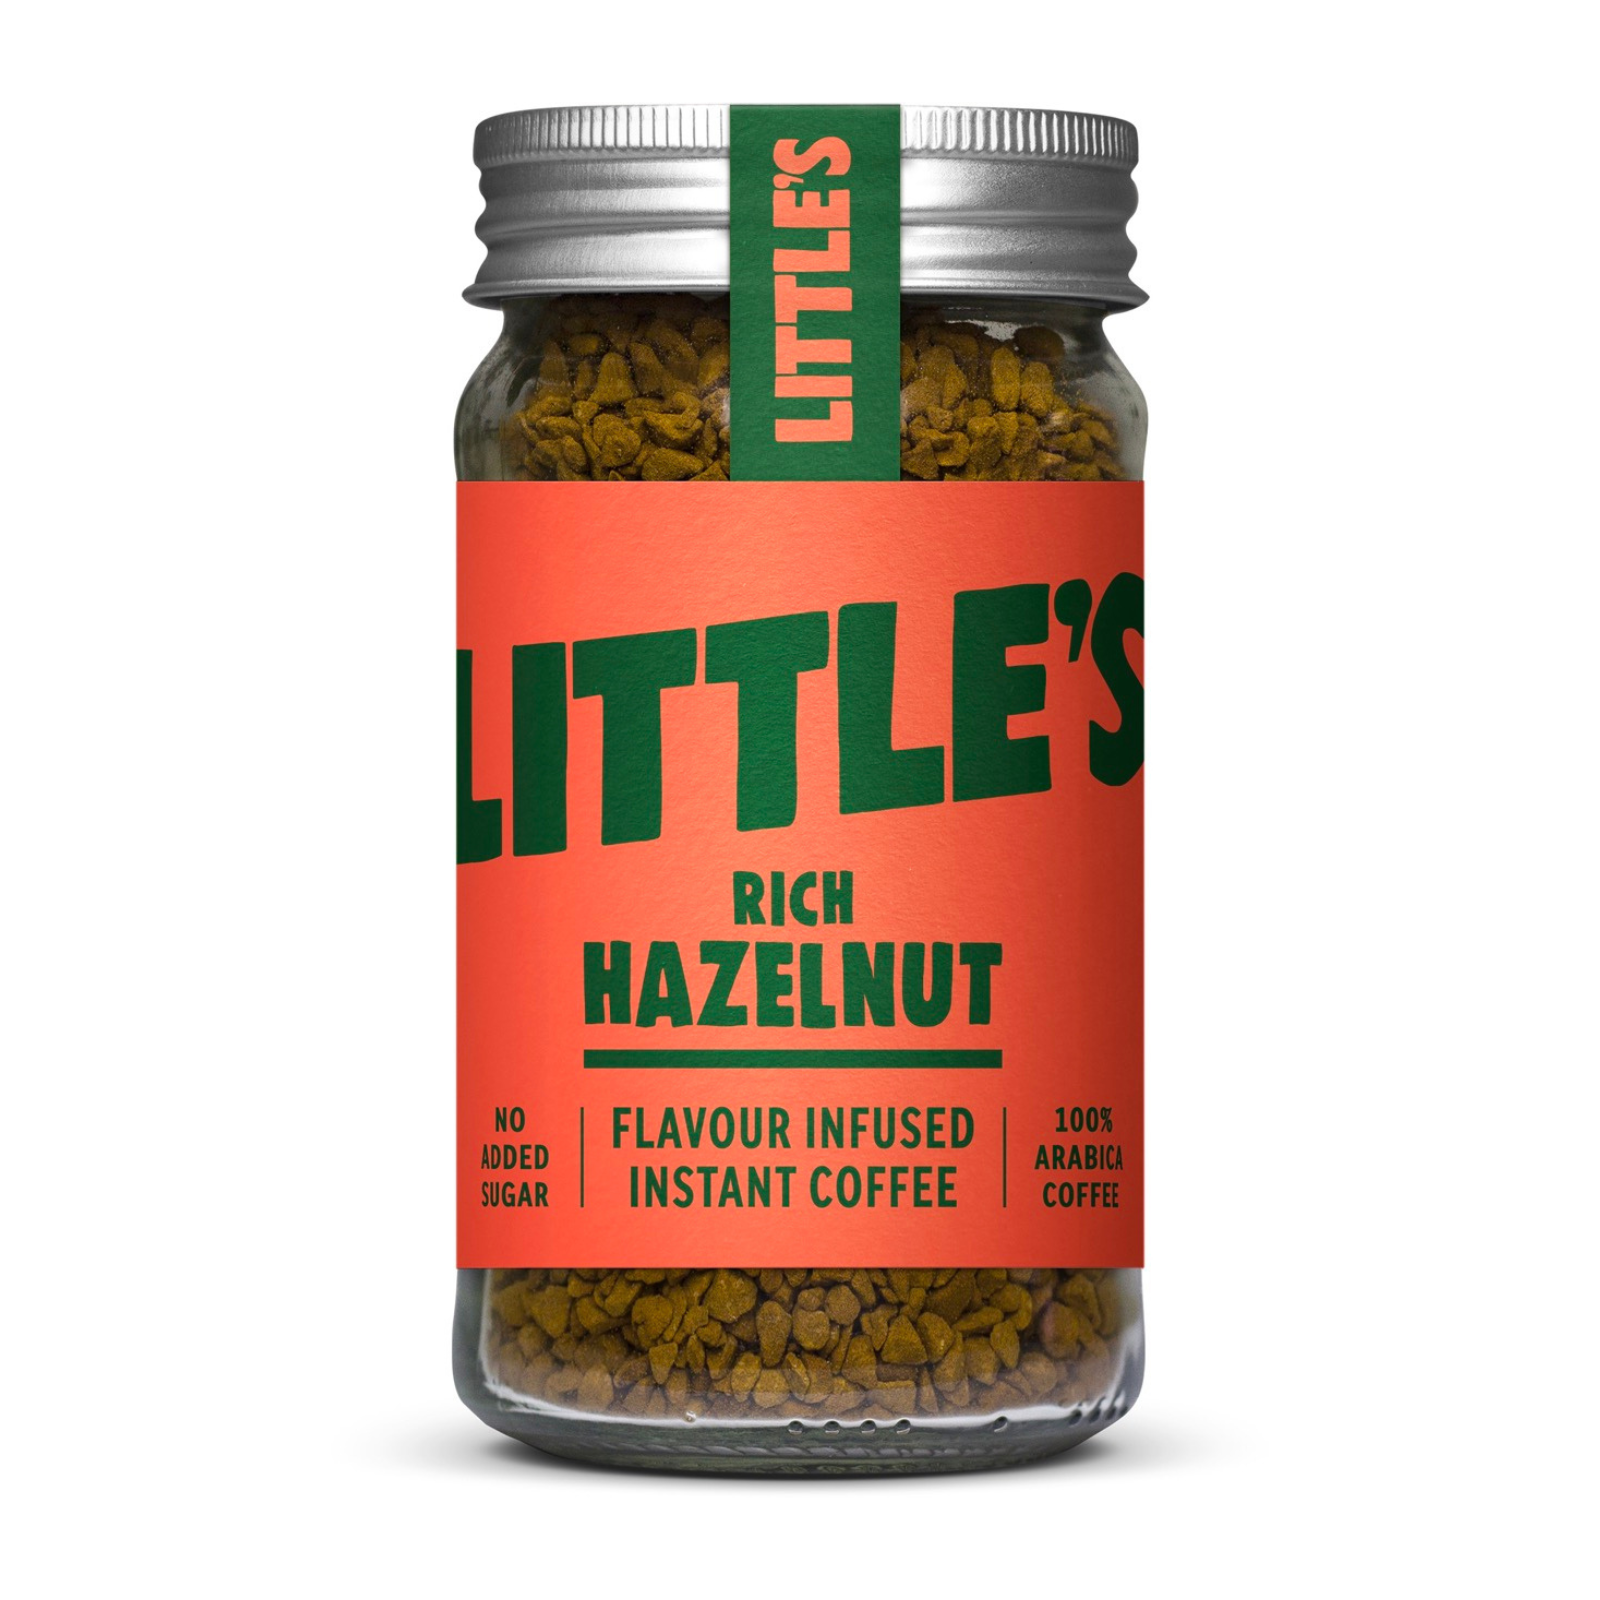 Little's Rich Hazelnut Instant Coffee